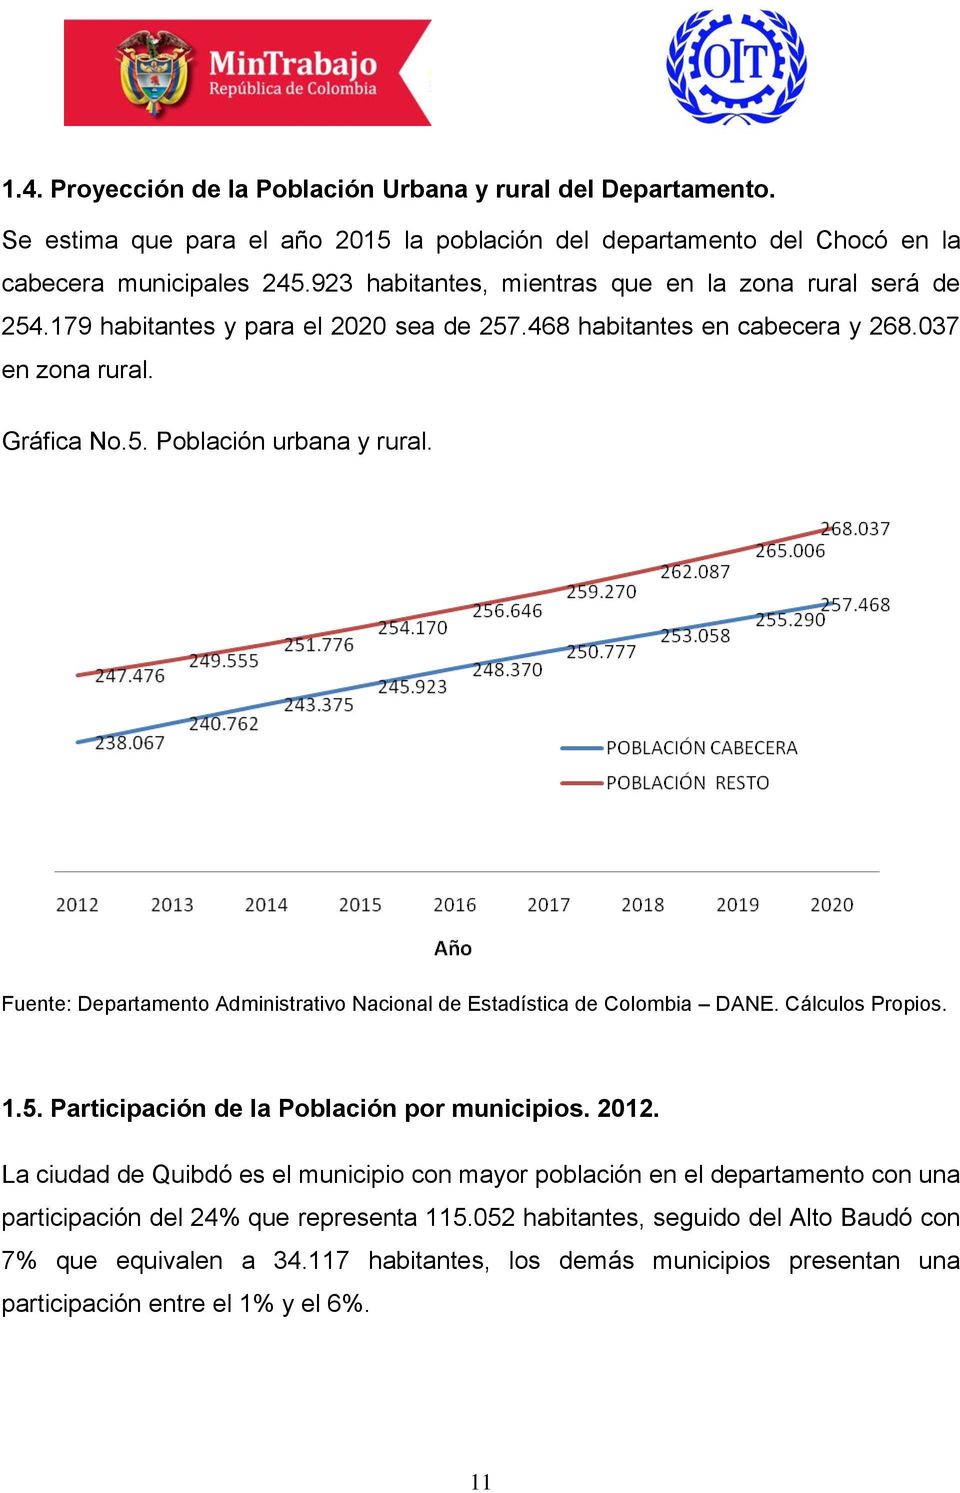 Fuente: Departamento Administrativo Nacional de Estadística de Colombia DANE. Cálculos Propios. 1.5. Participación de la Población por municipios. 2012.